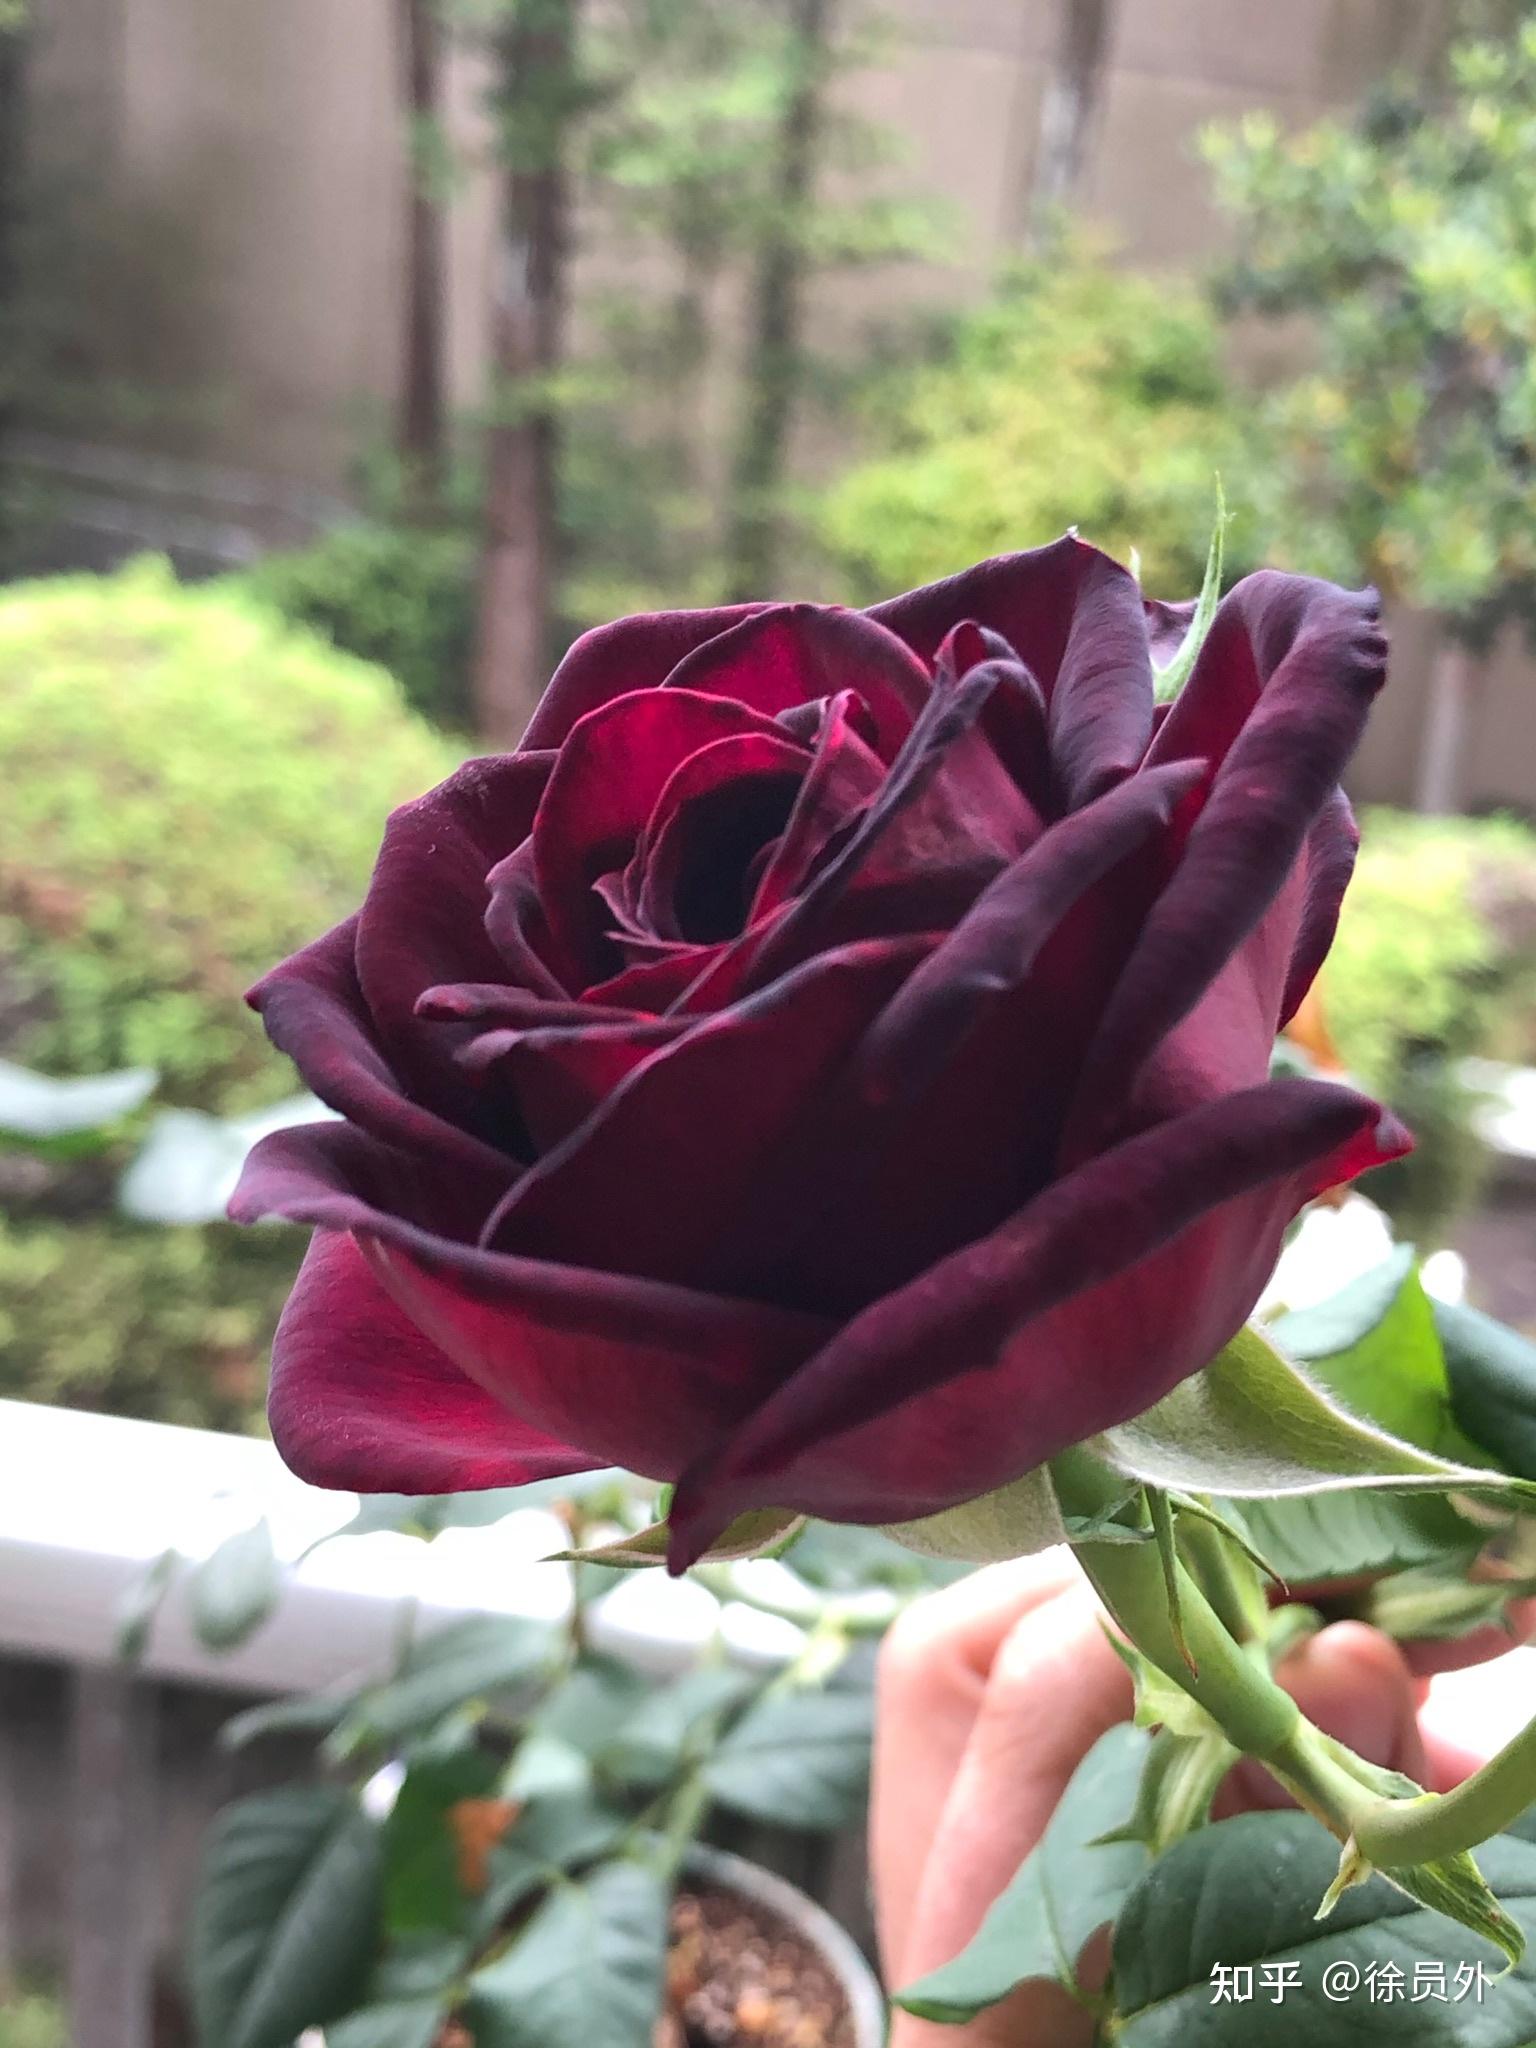 黑魔术玫瑰怎么养才好? 